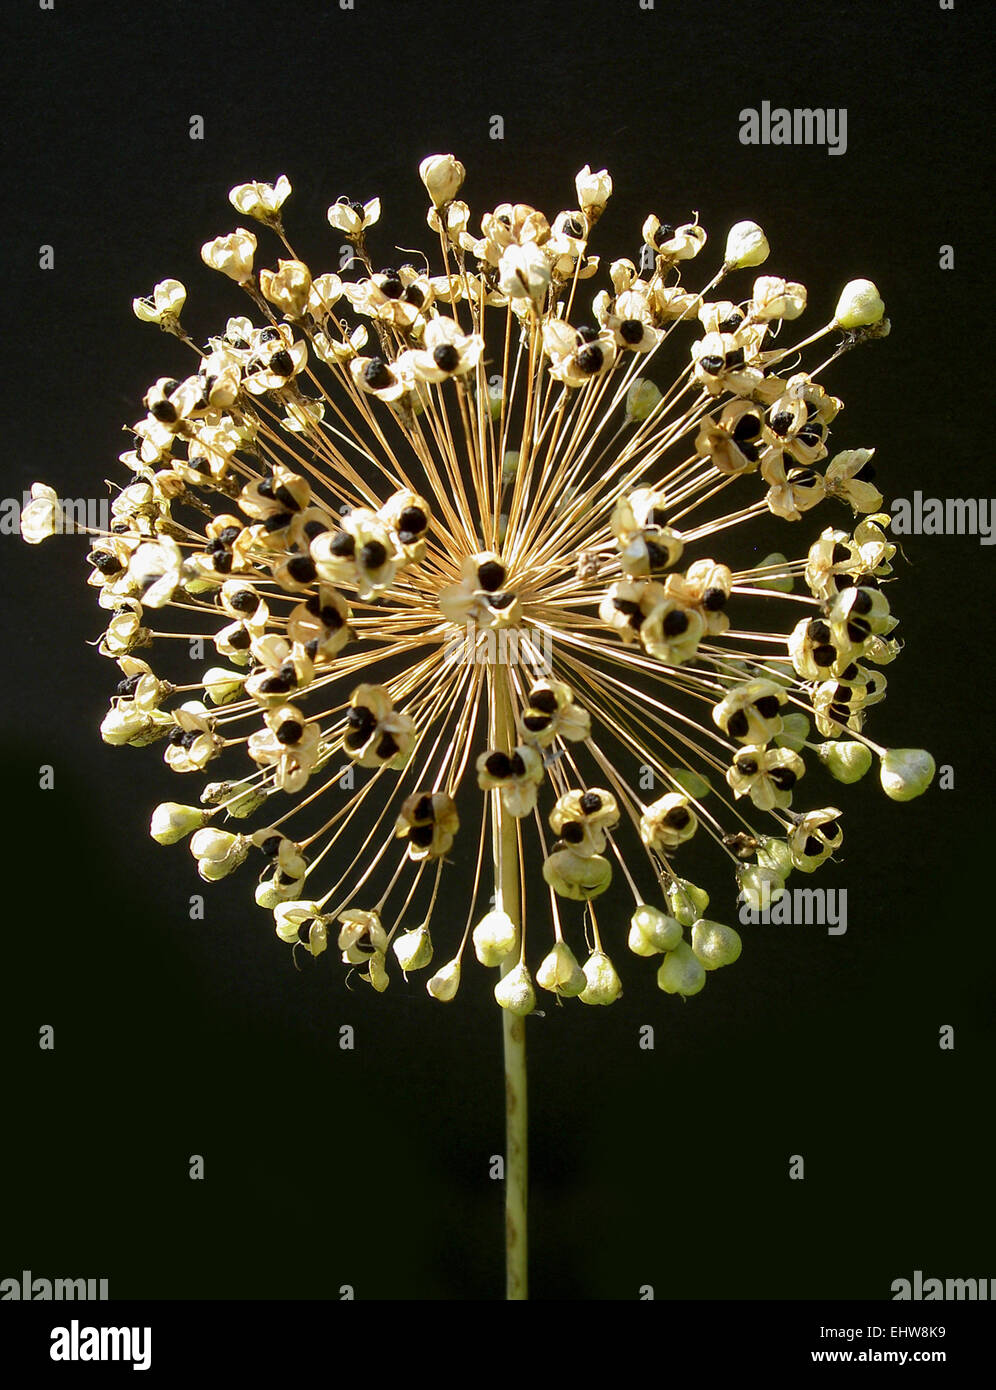 Allium Stock Photo